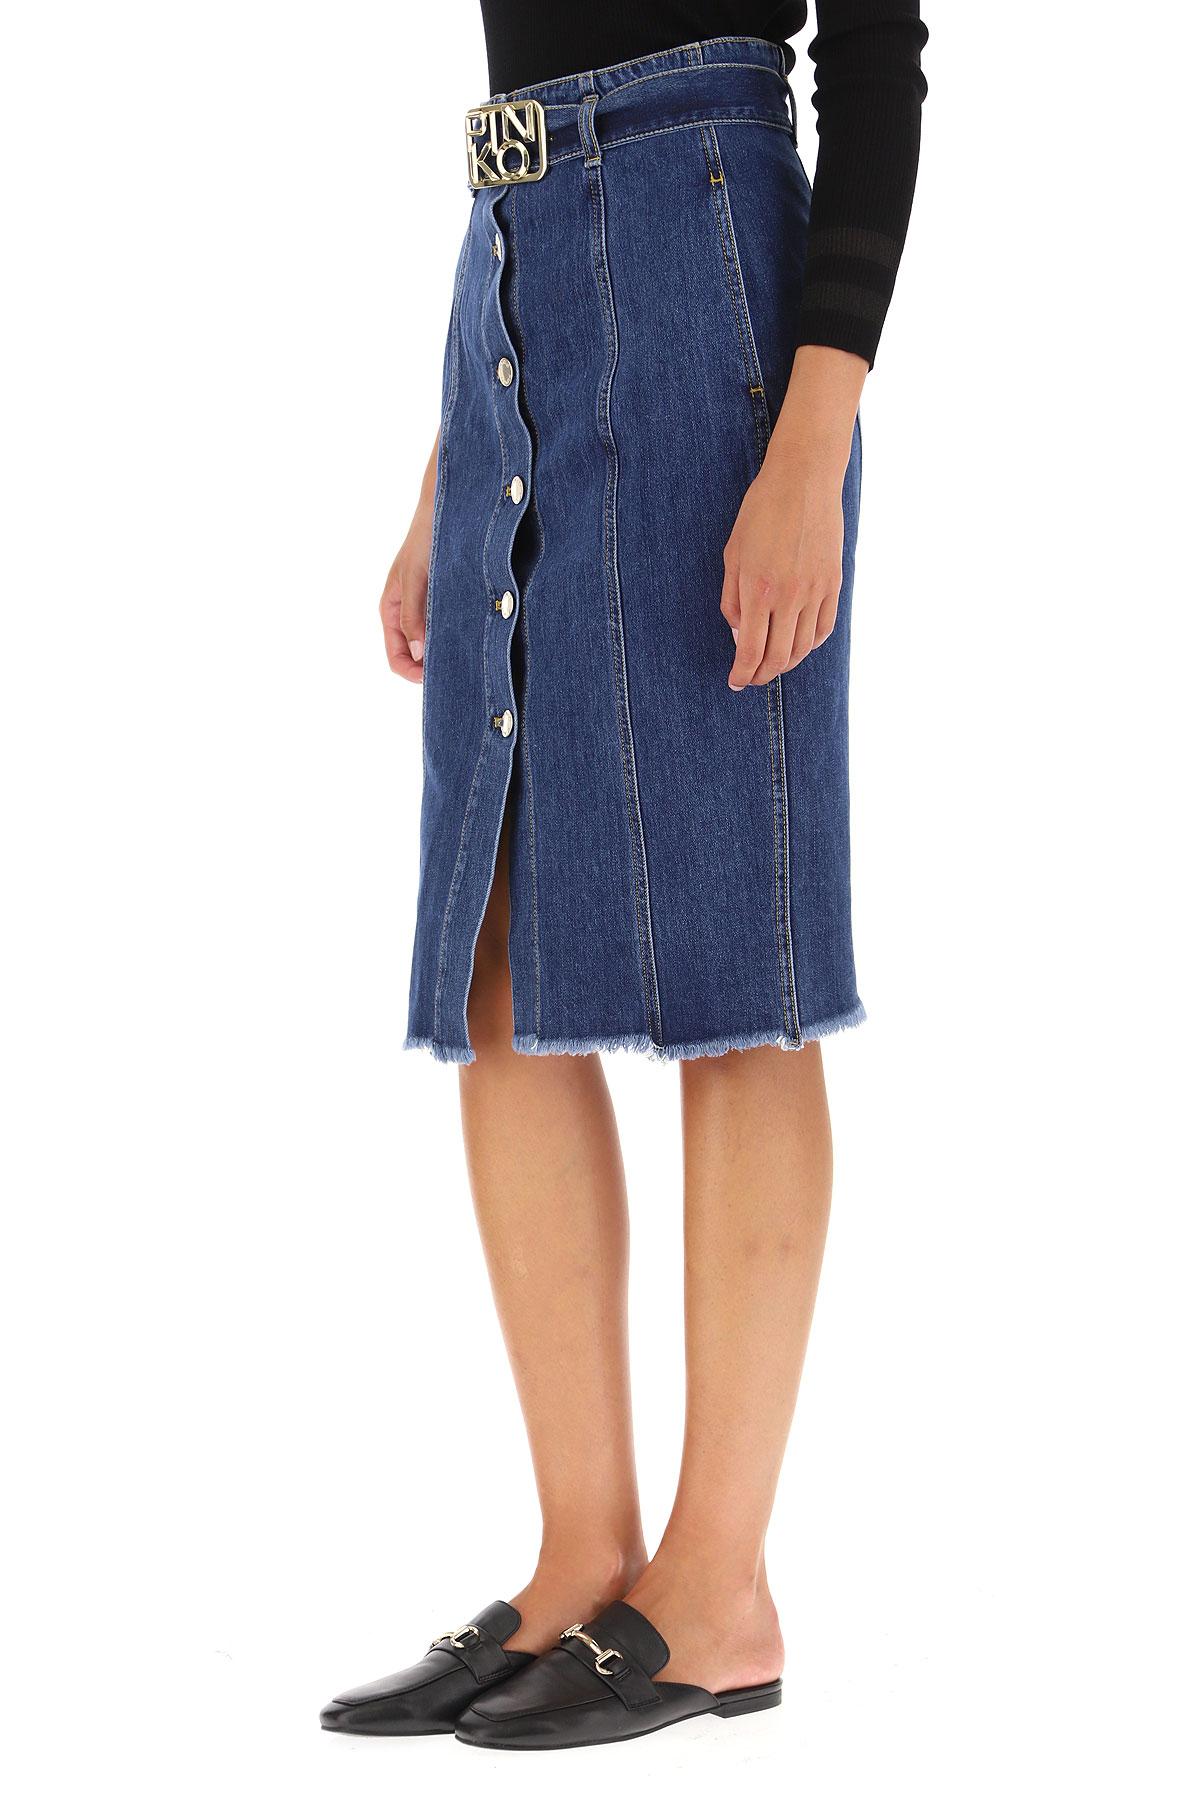 Pinko Skirt For Women in Denim (Blue) - Lyst